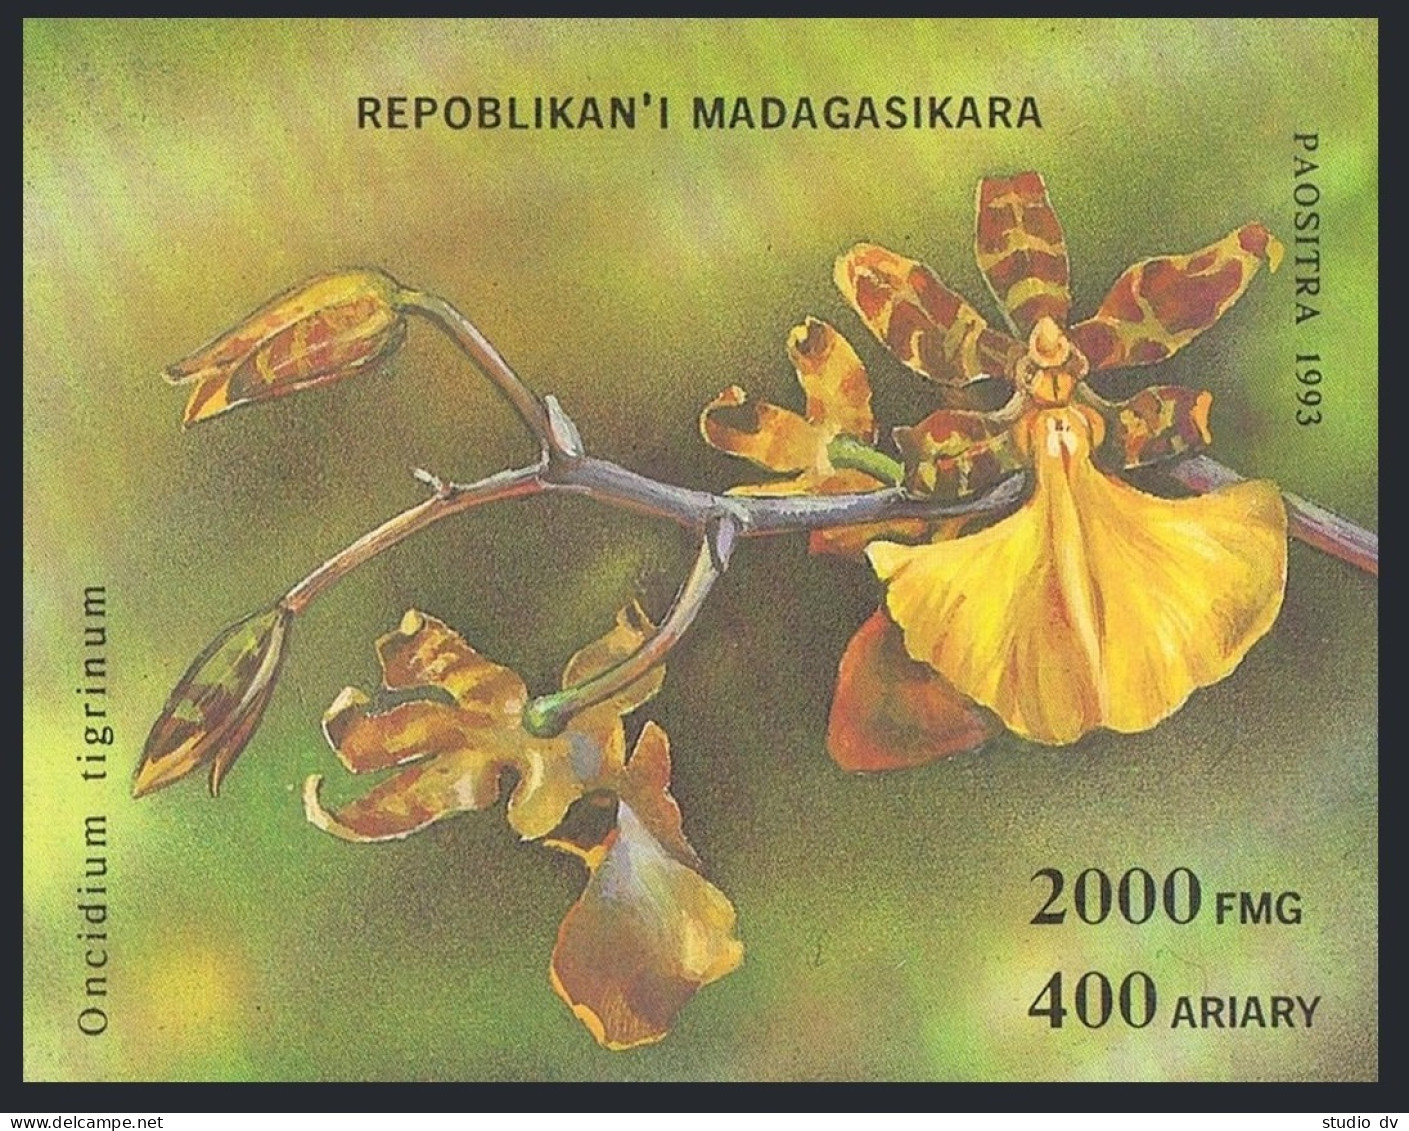 Malagasy 1272-1278,1279,MNH.Michel 1570-1576,Bl.239. Orchids,1993. - Madagaskar (1960-...)